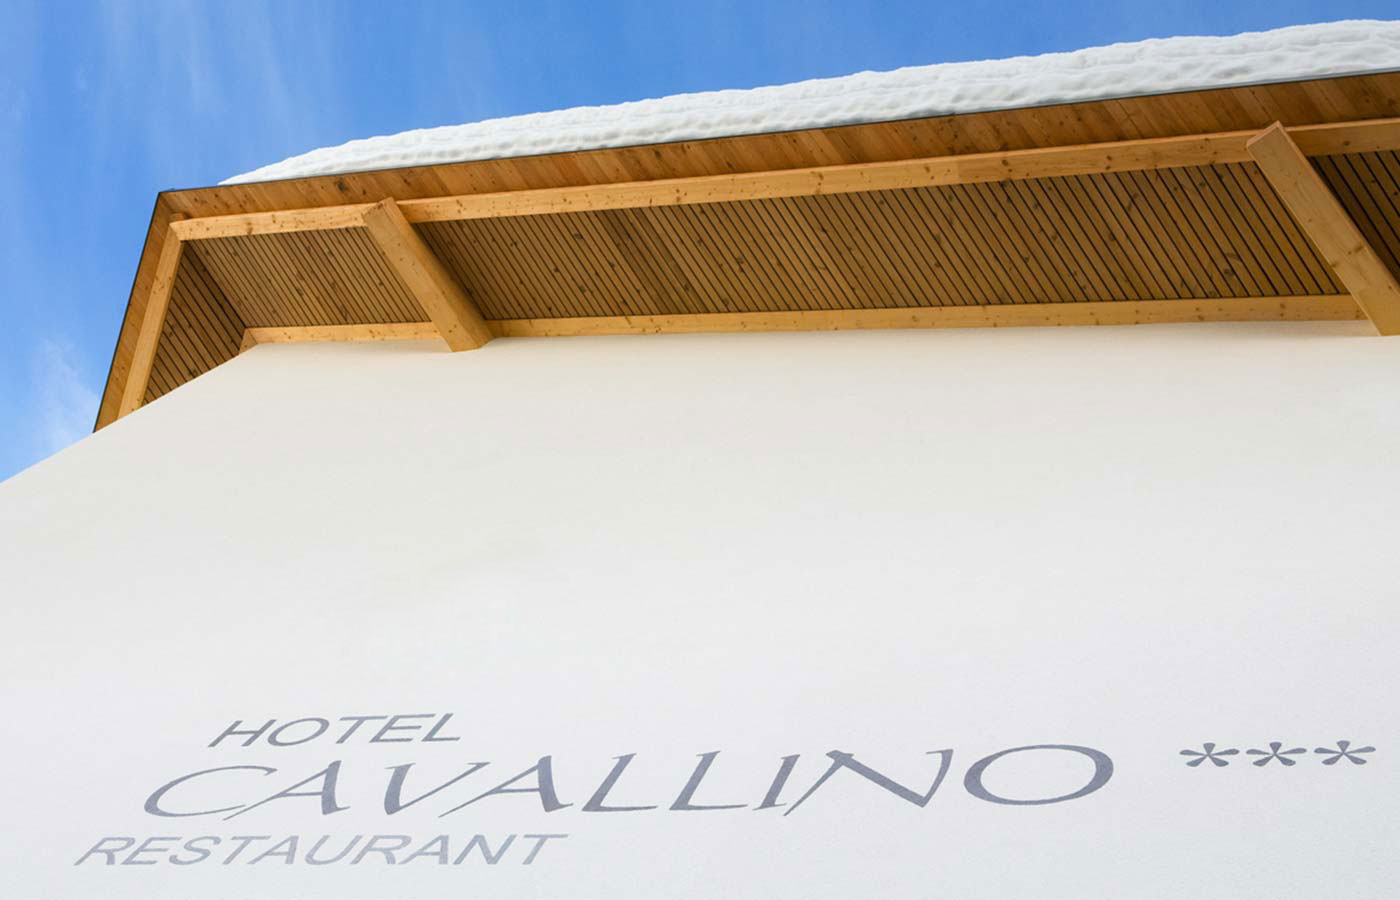 Schriftzug 'Hotel Cavallino' an der Fassade